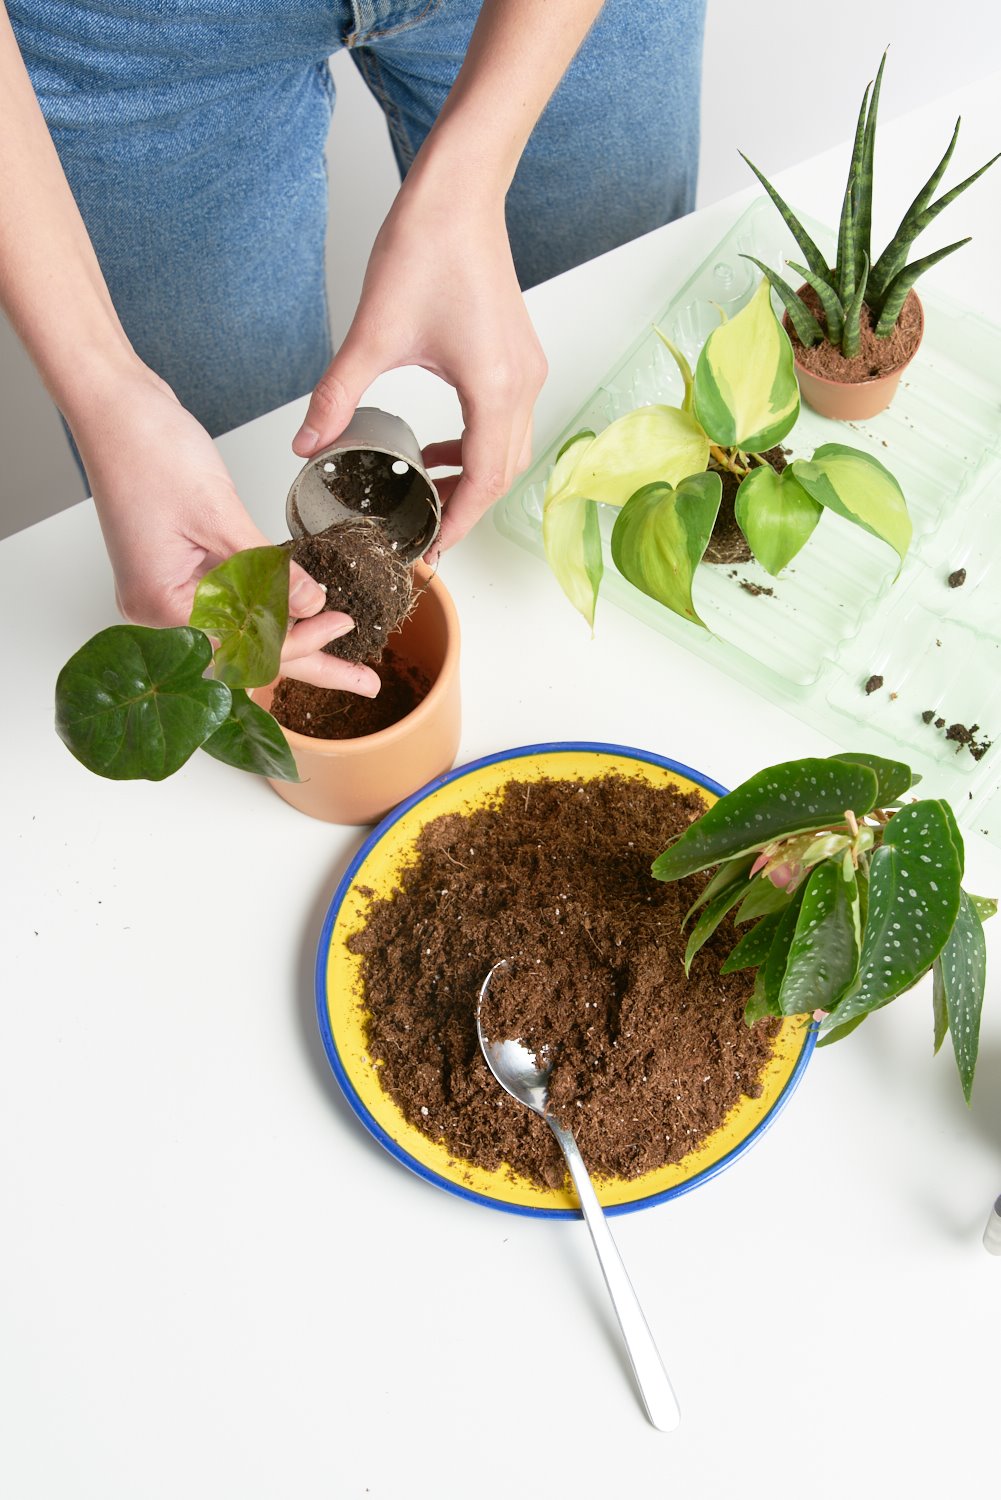 Las mini plantas llegan a casa en un packaging sostenible creado con botellas de plástico reciclado.